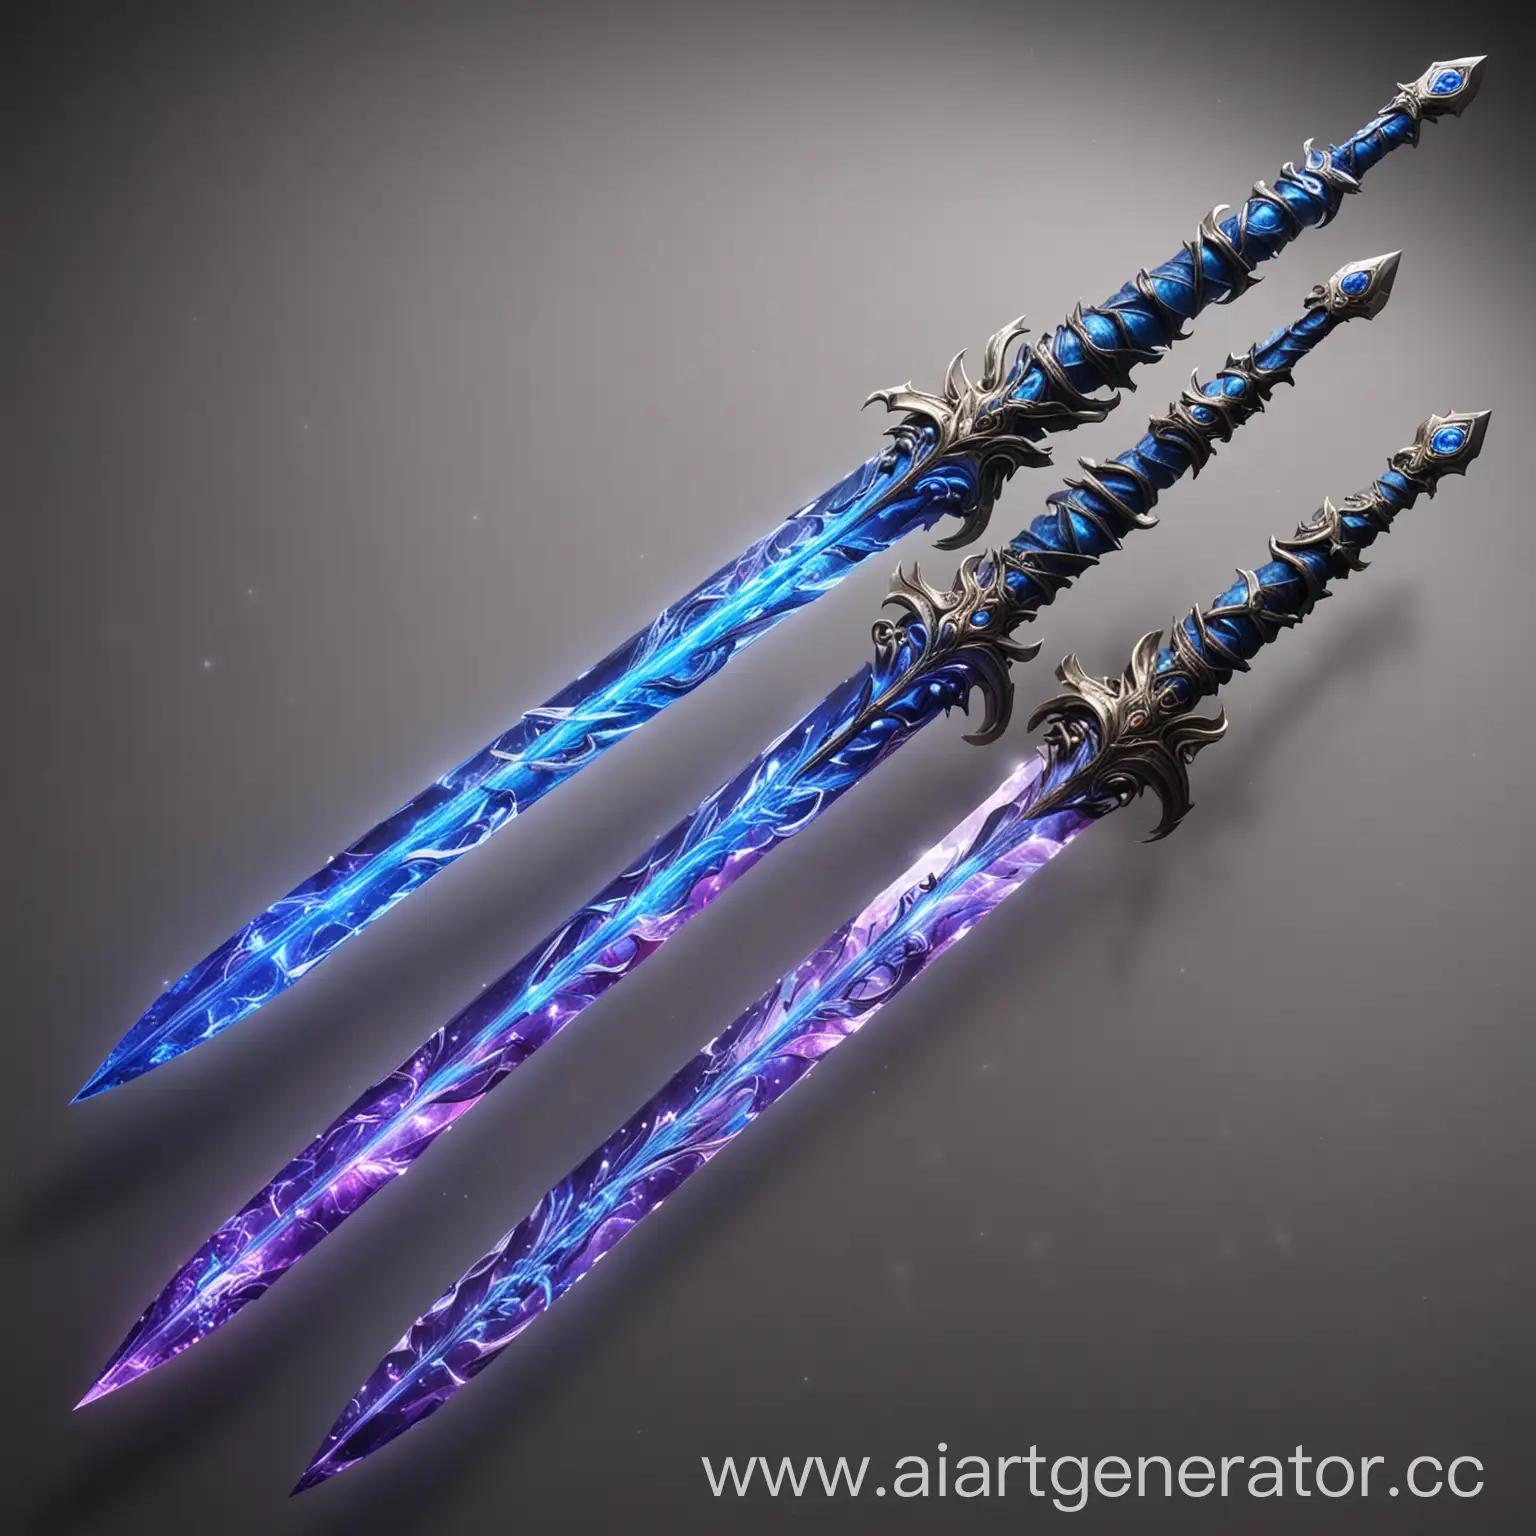 Двойной галактический меч, каждый меч имеет одно кристальное лезвие, каждое из которых обладает уникальной способностью. Первое лезвие излучает яркий синий свет, способный нейтрализовать и разрушать силы тьмы. Второе лезвие излучает фиолетовый свет, который обладает защитными и исцеляющими свойствами.